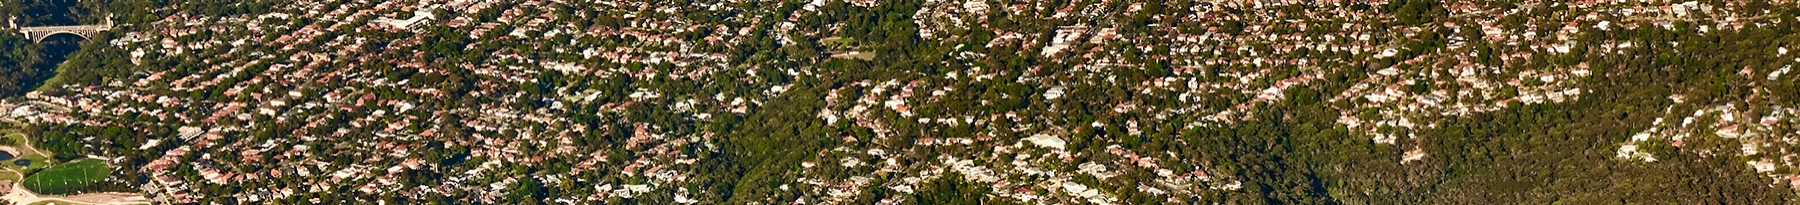 Aerial photograph of Sydney suburbs